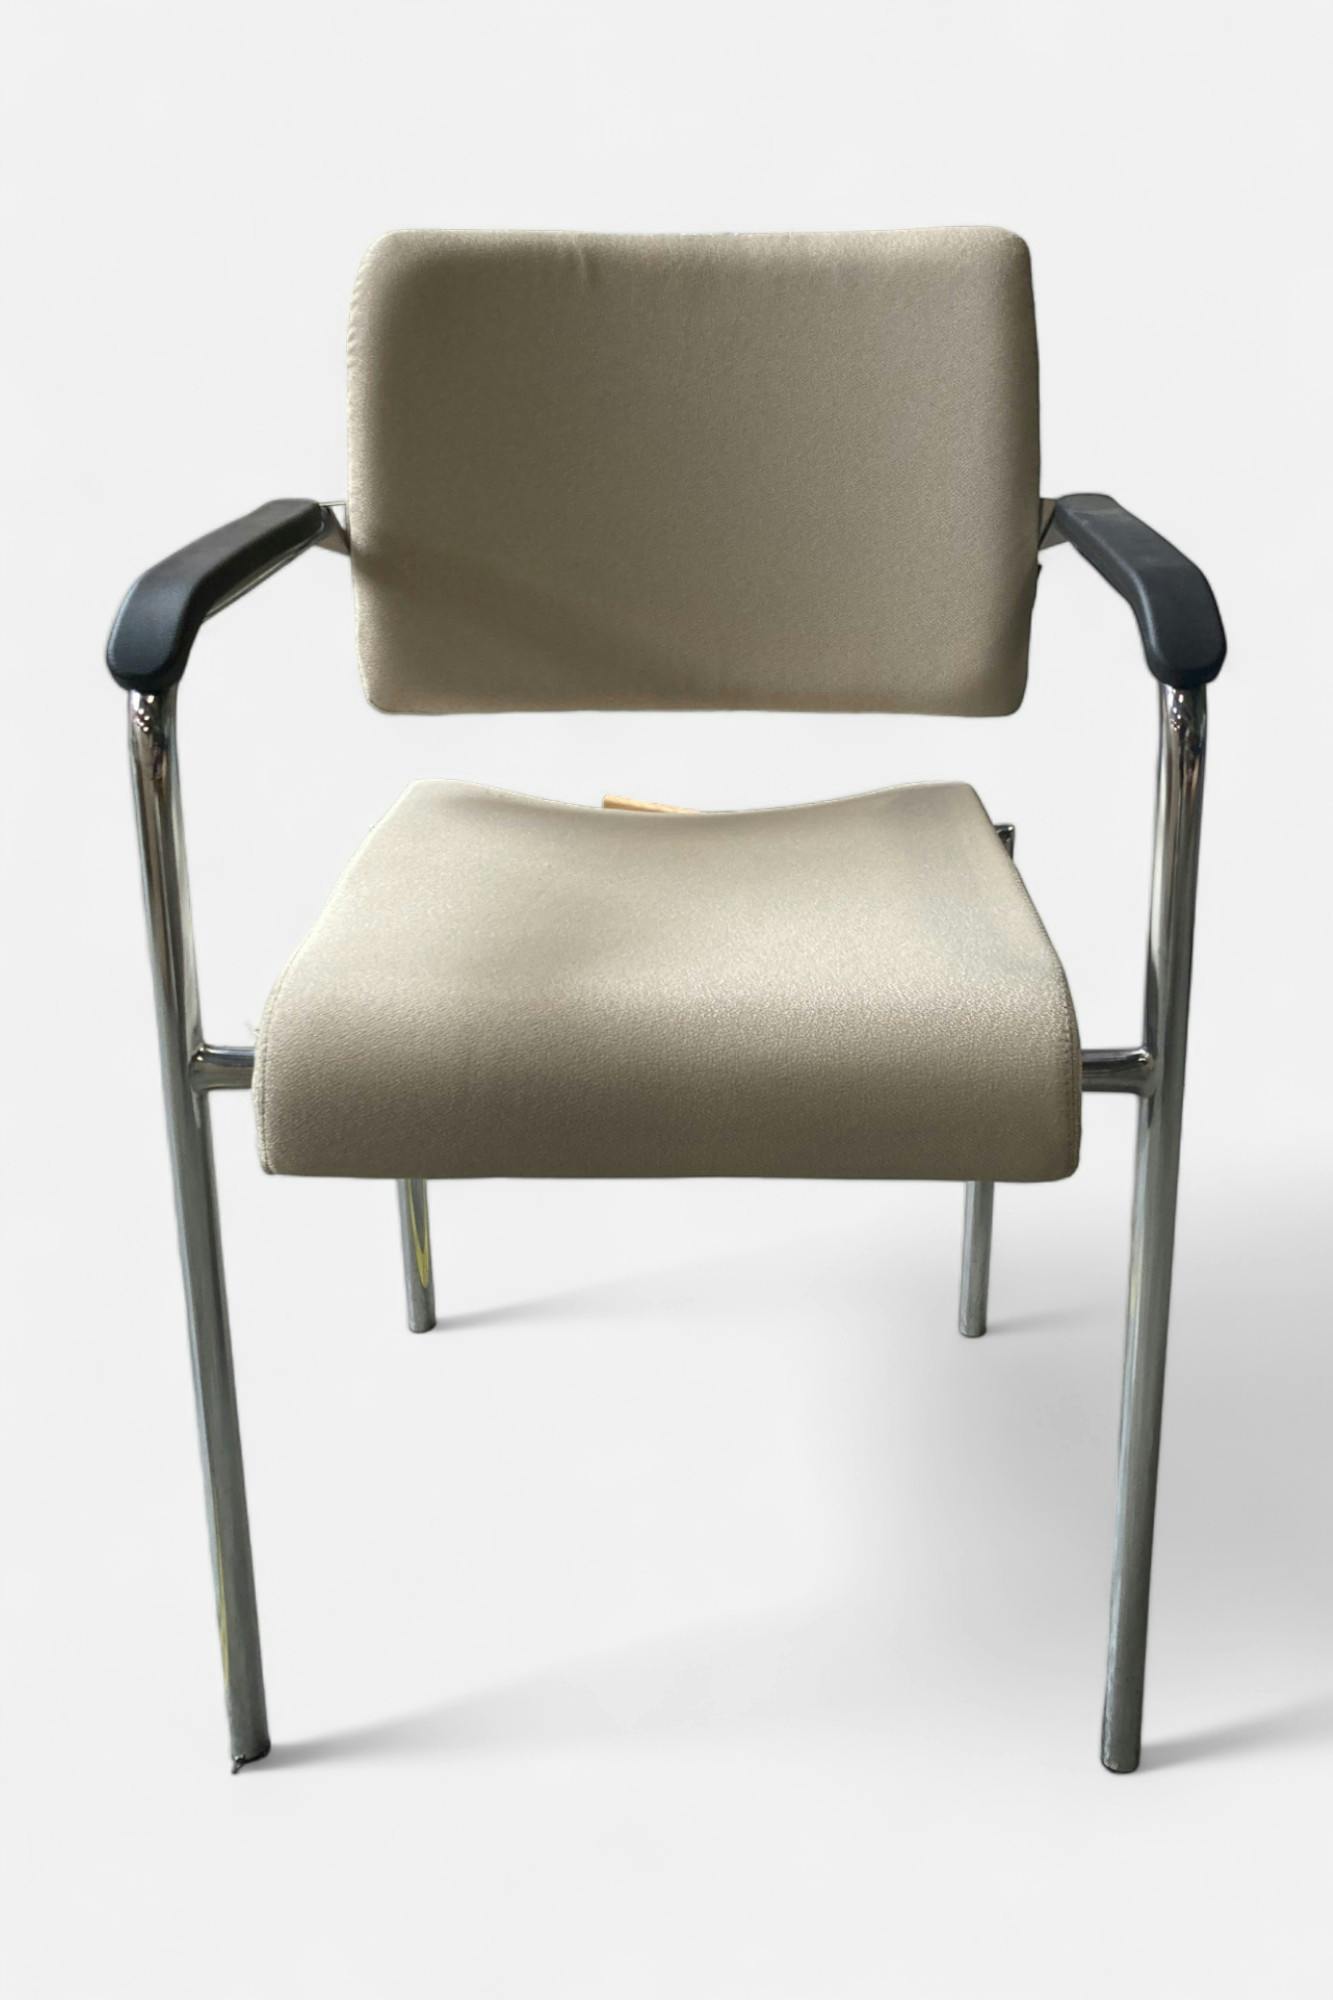 DROMEAS Modèle Porto Chaise visiteur beige avec accoudoirs noirs - Relieve Furniture